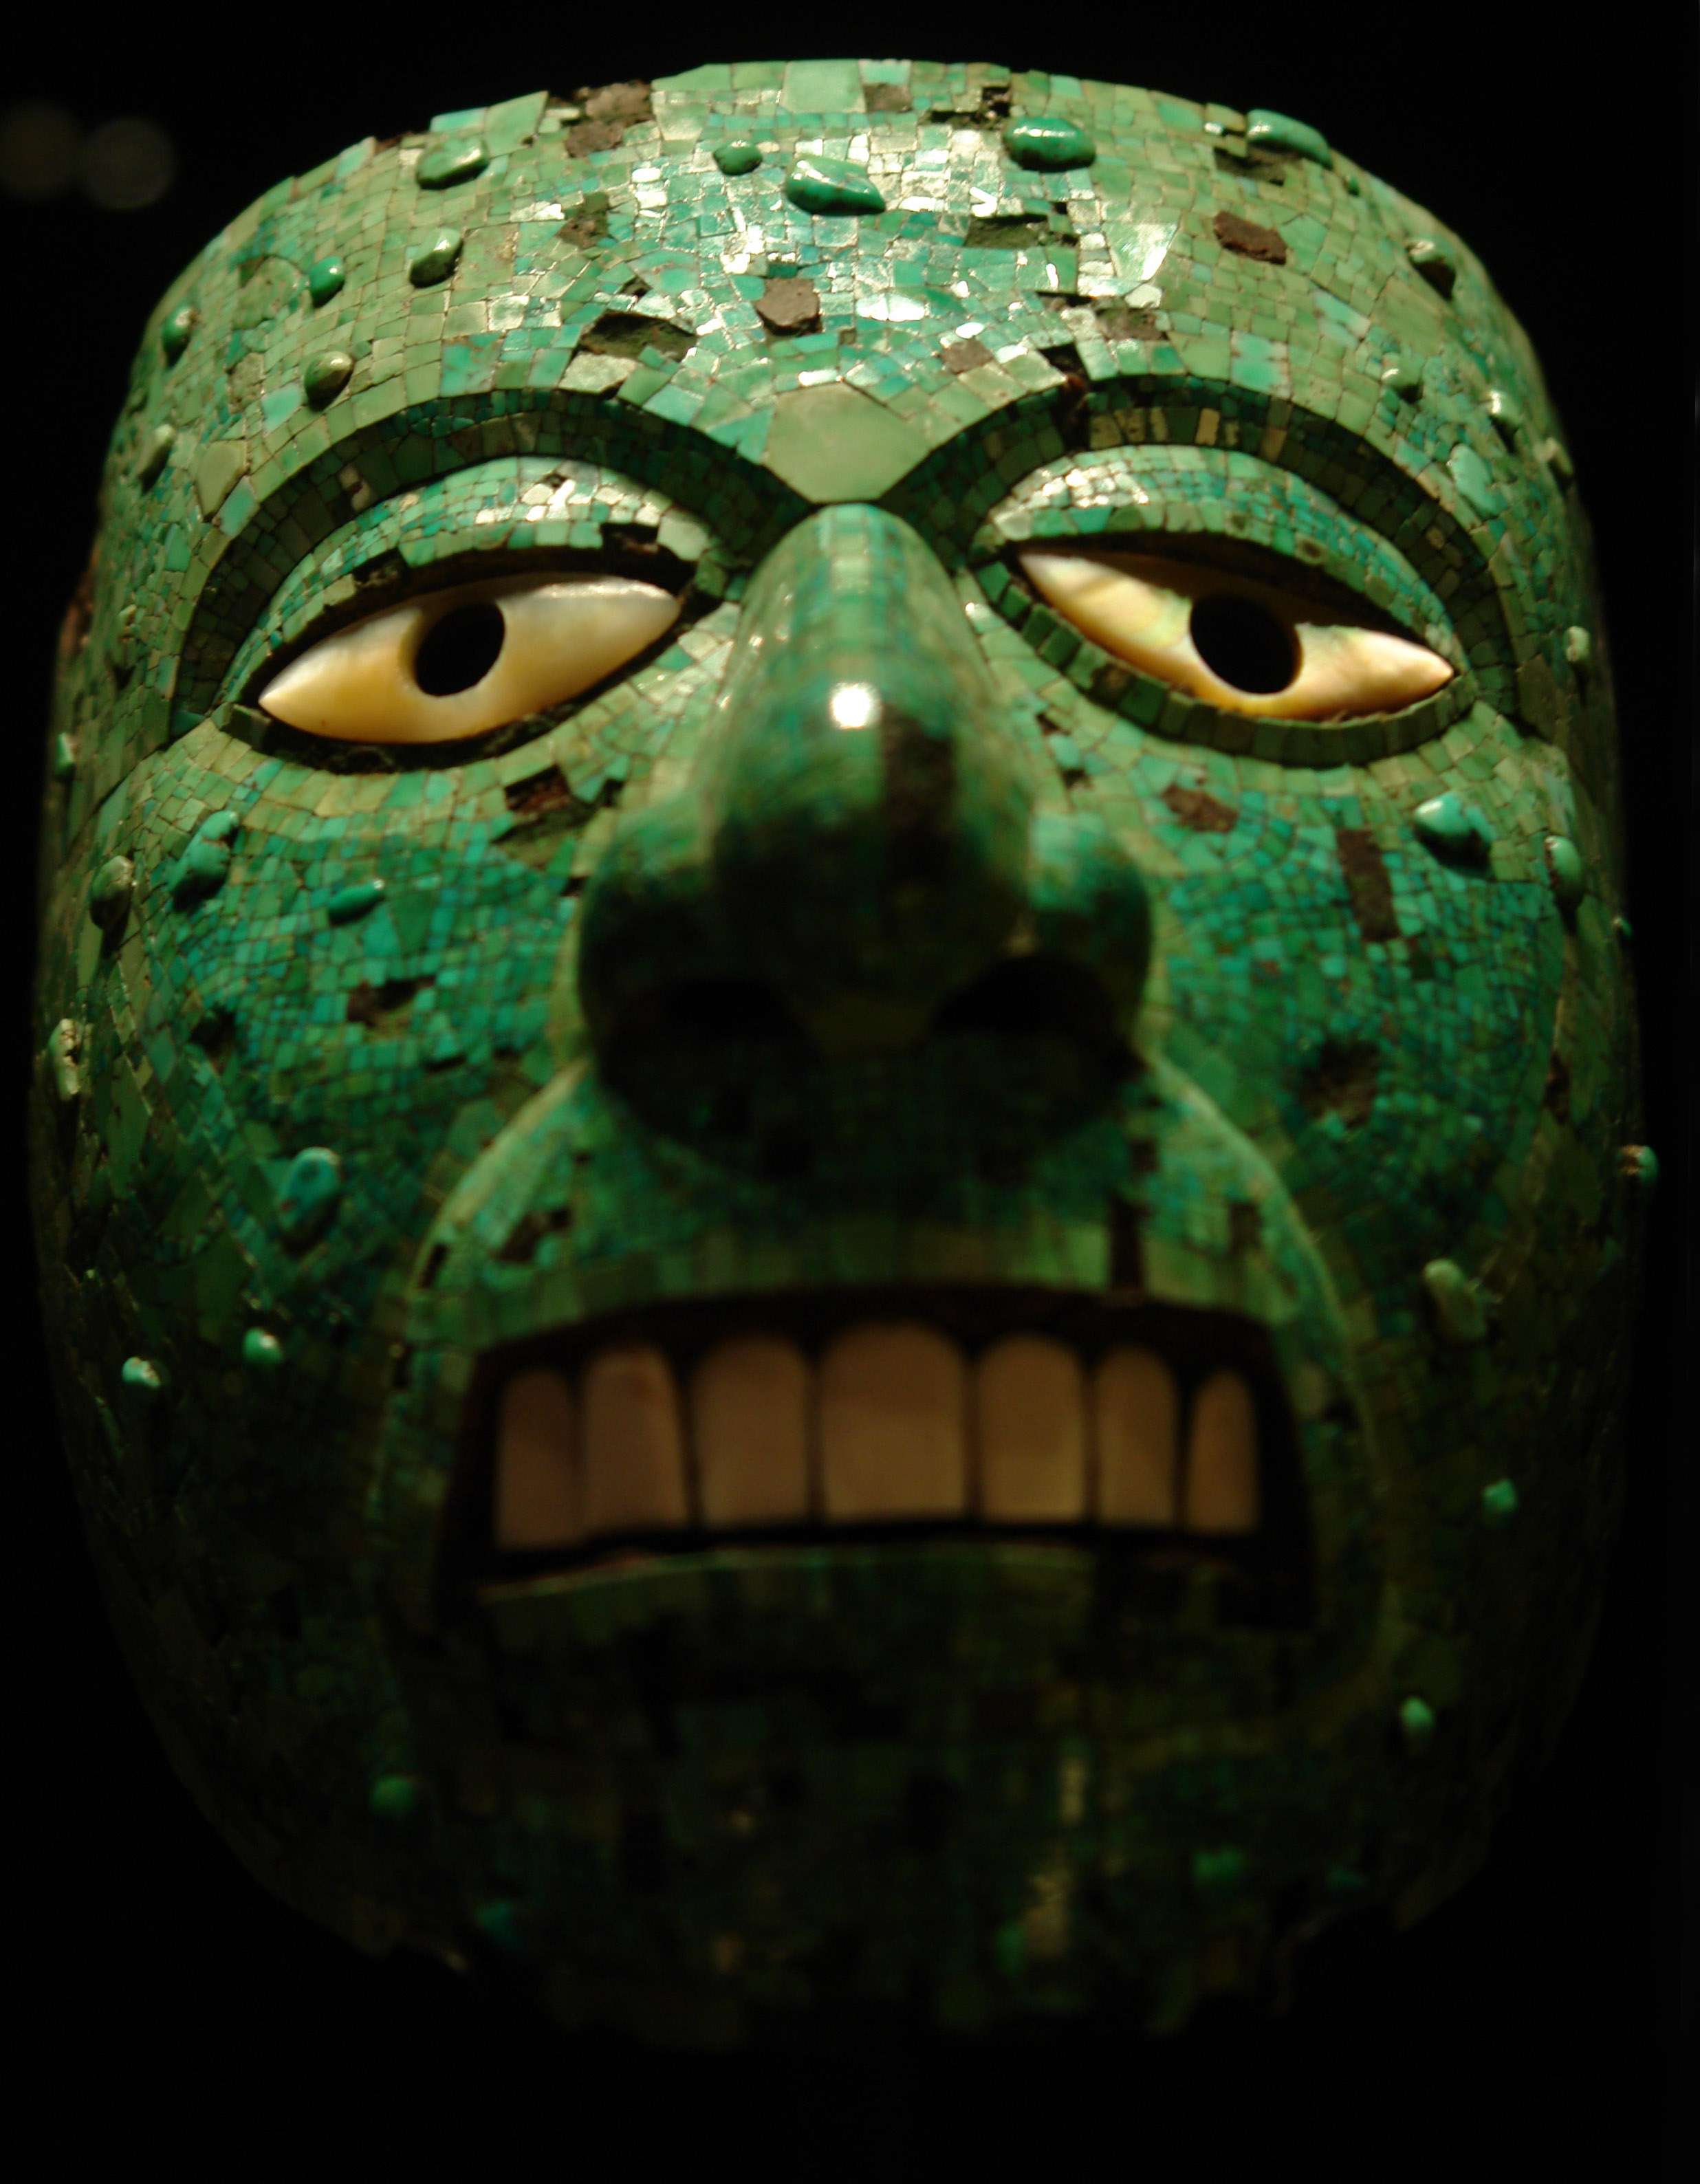 Μάσκα από τιρκουάζ του θεού της φωτιάς Σιουτεκούτλι, κατασκευής Αζτέκων ή Μιξτέκων. Βρετανικό Μουσείο, Λονδίνο.